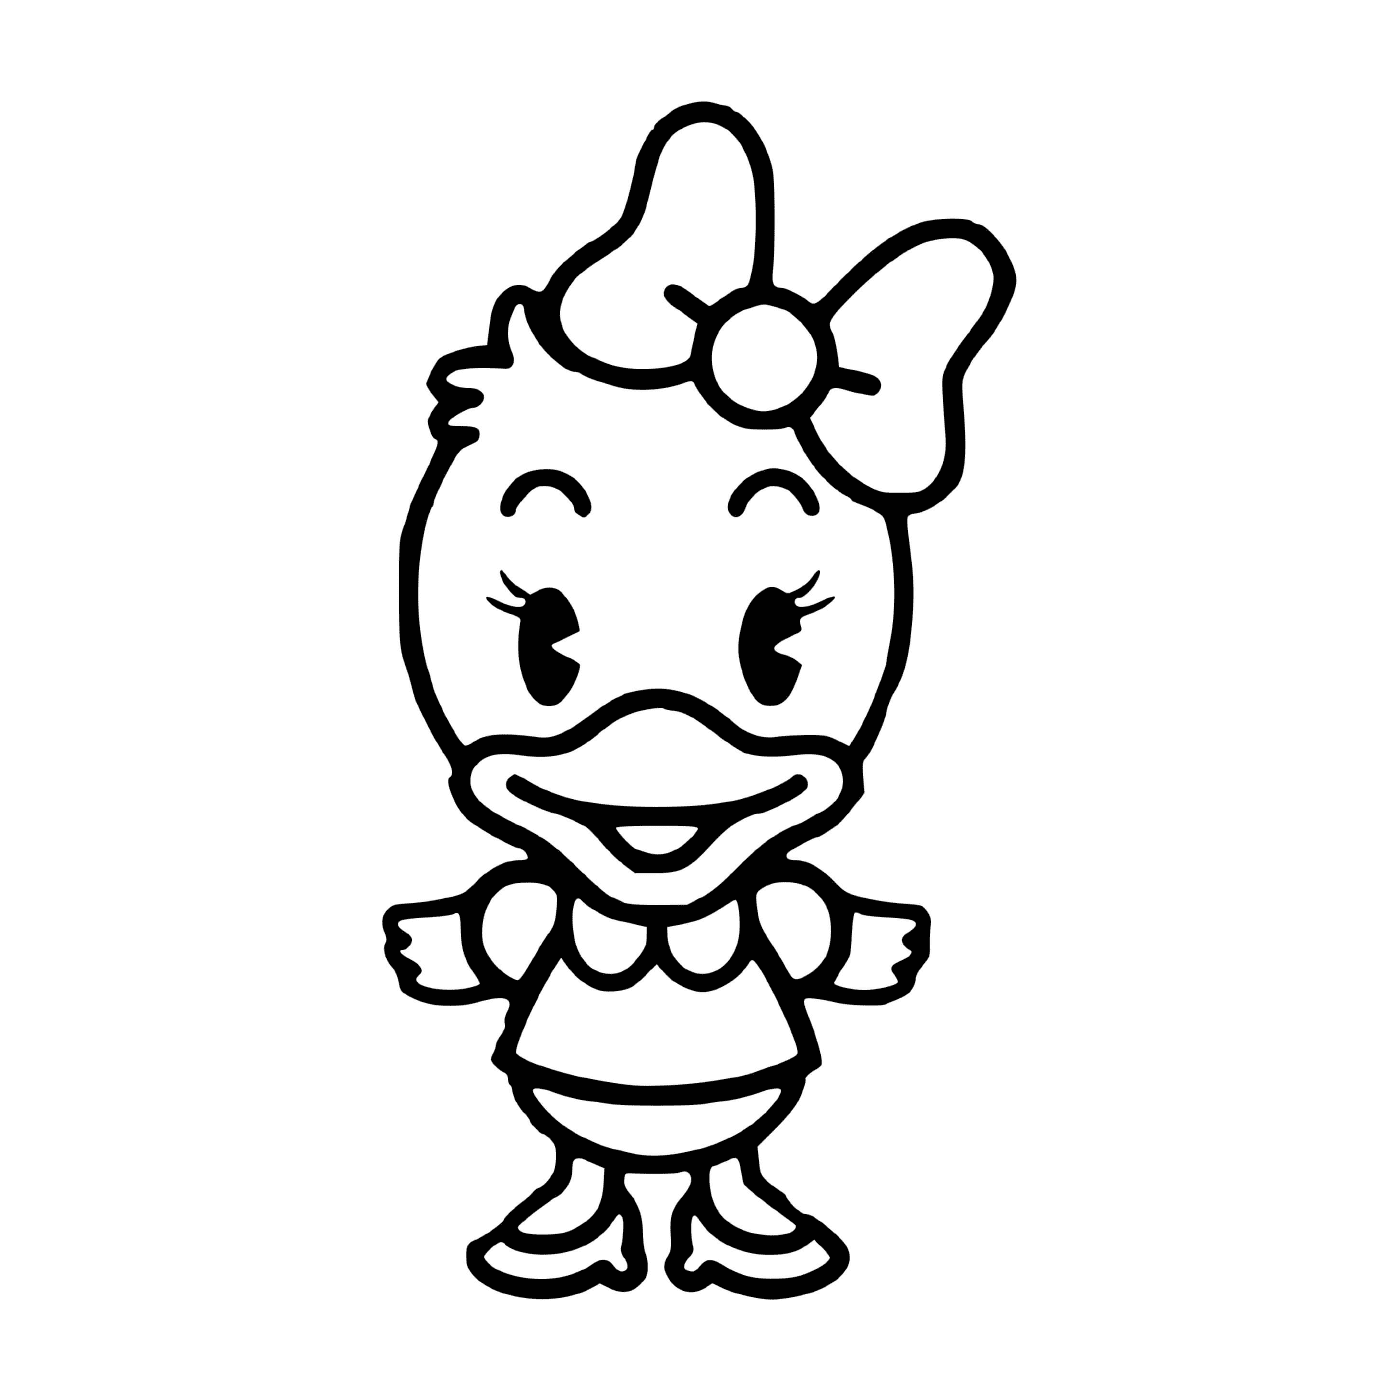  Daisy Duck baby from Disney 